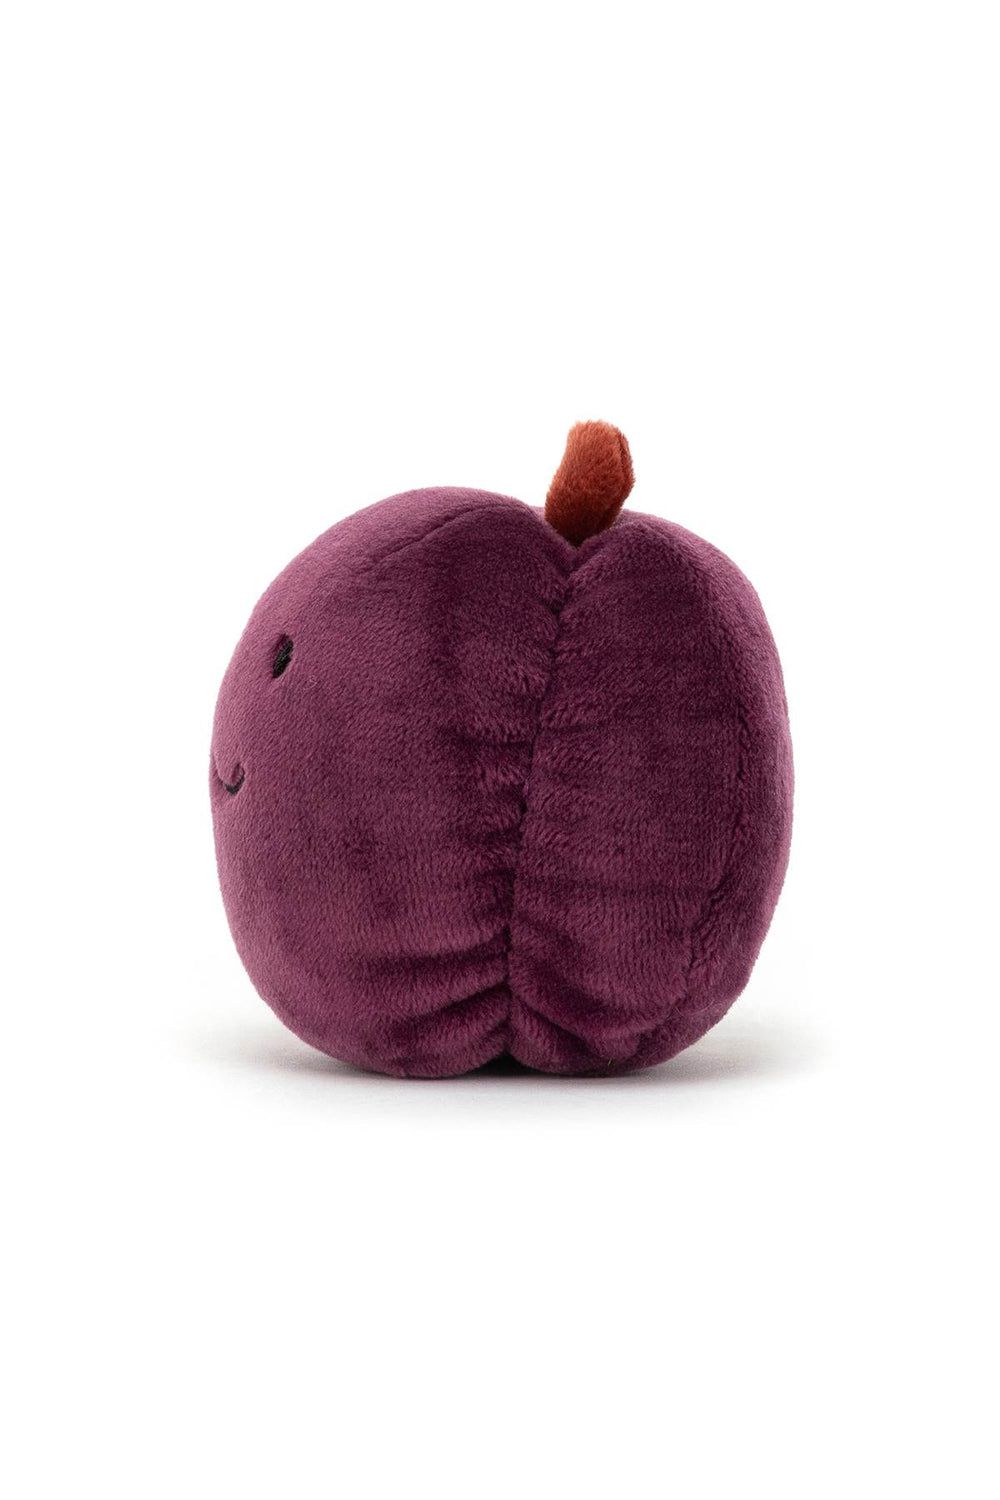 plush fabulous fruit plum-1